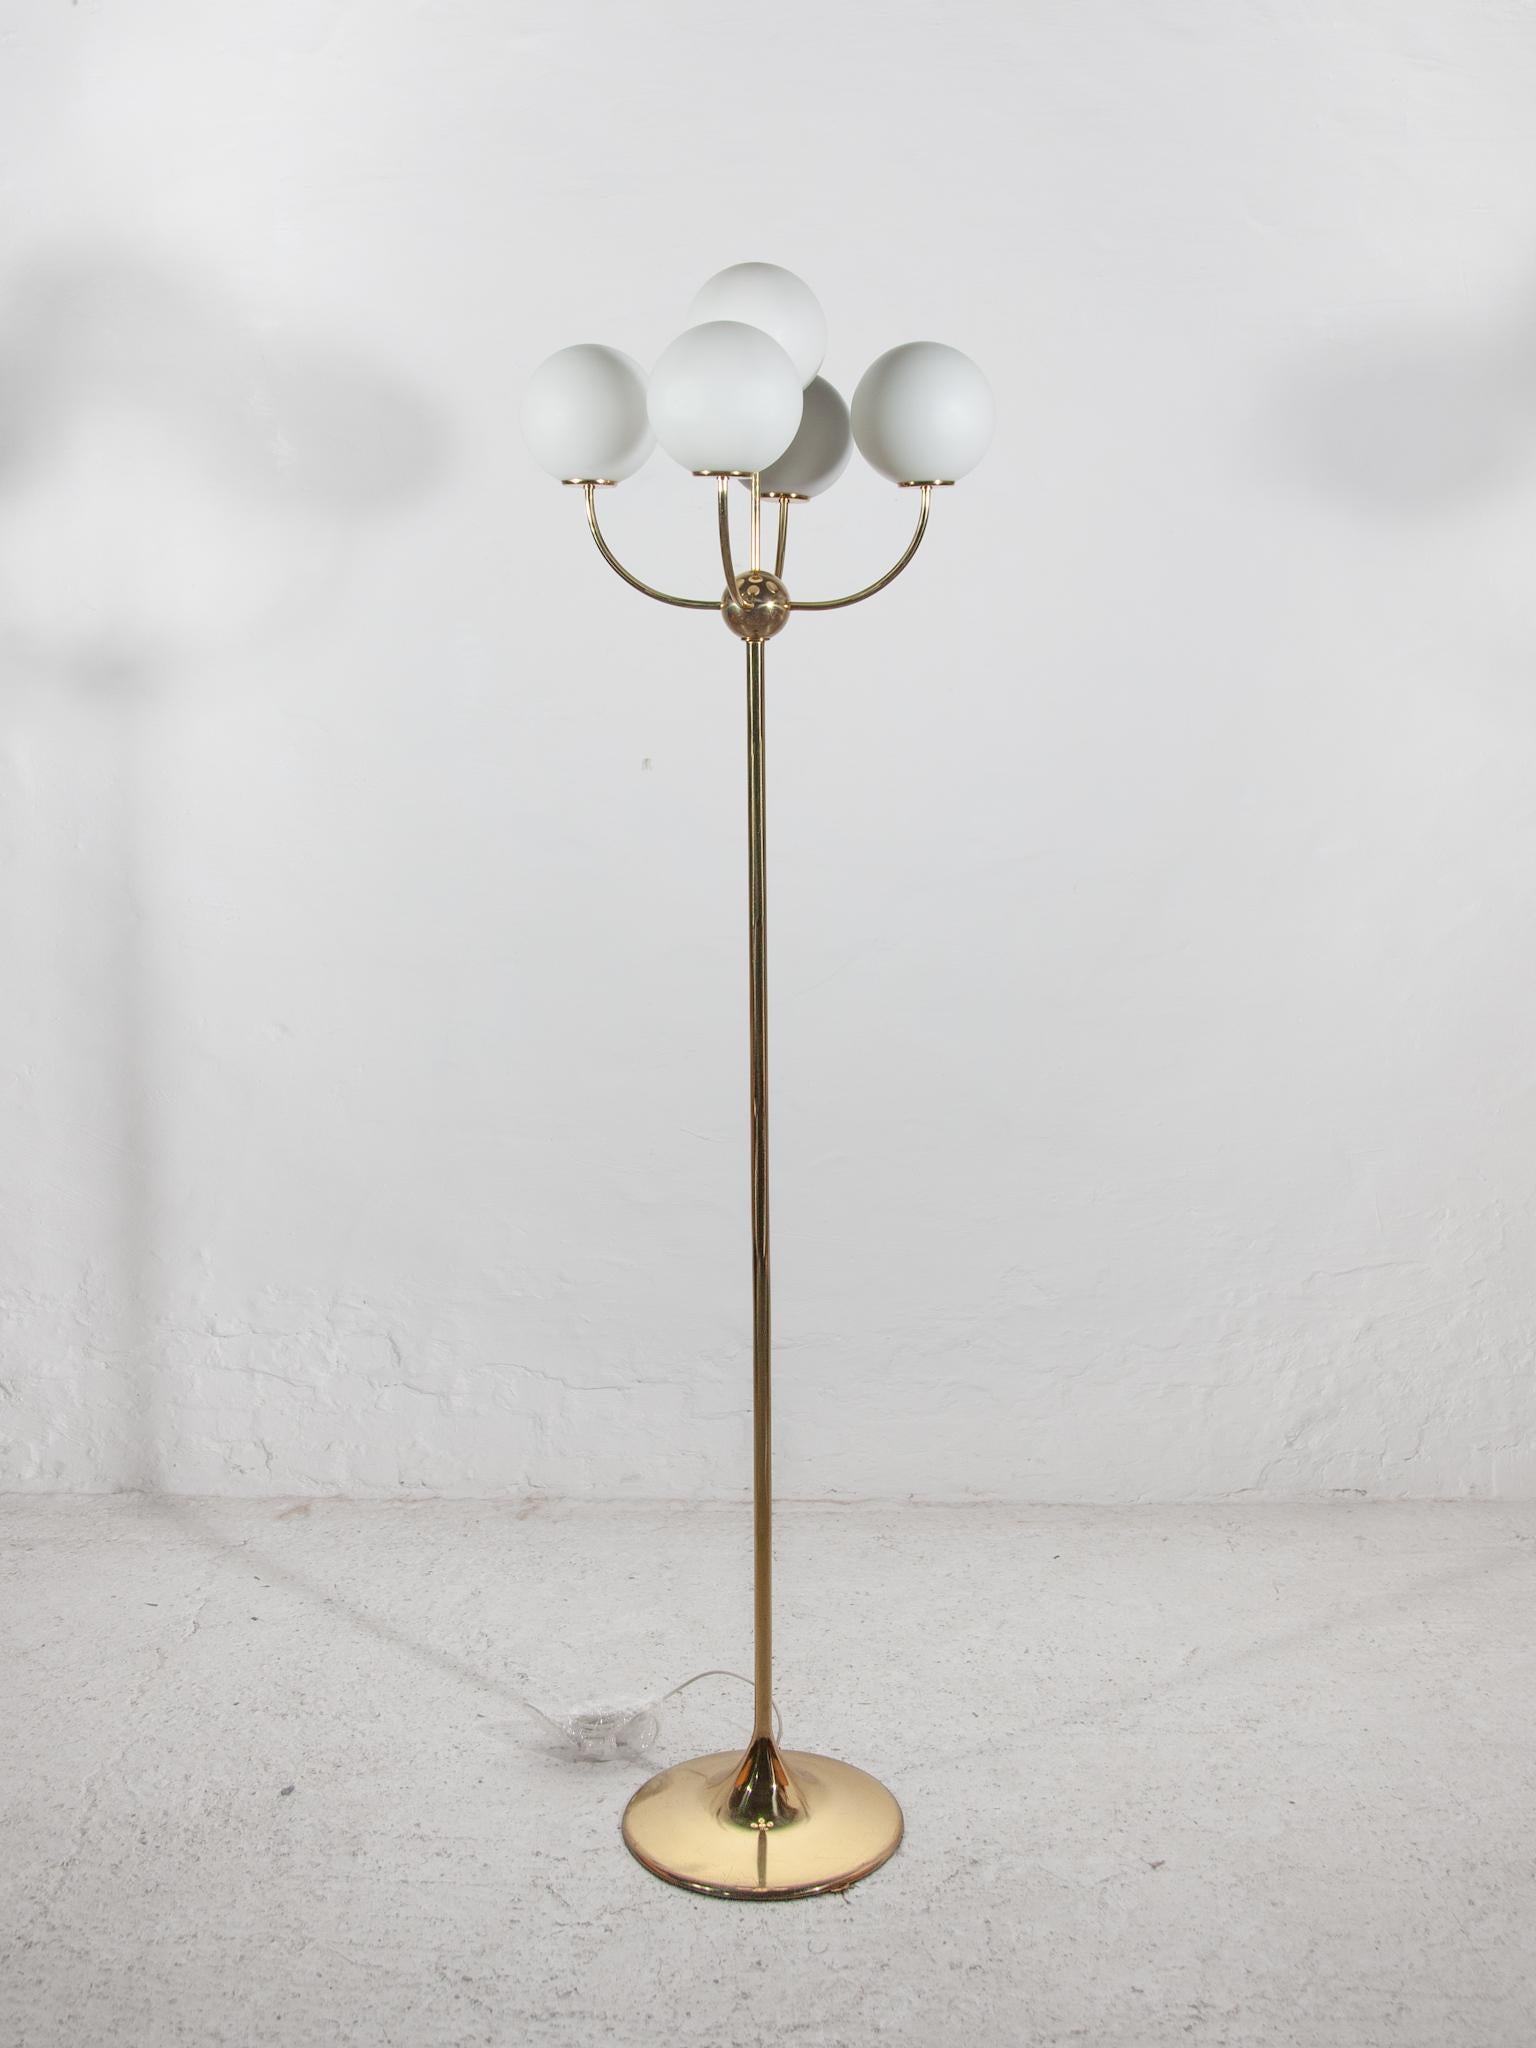 Wunderschöne seltene Stehlampe mit fünf Kugeln aus Opalglas in Messing, entworfen von Vereinigte Werkstätten München, Deutschland, 1970er Jahre. In einwandfreiem Originalzustand.